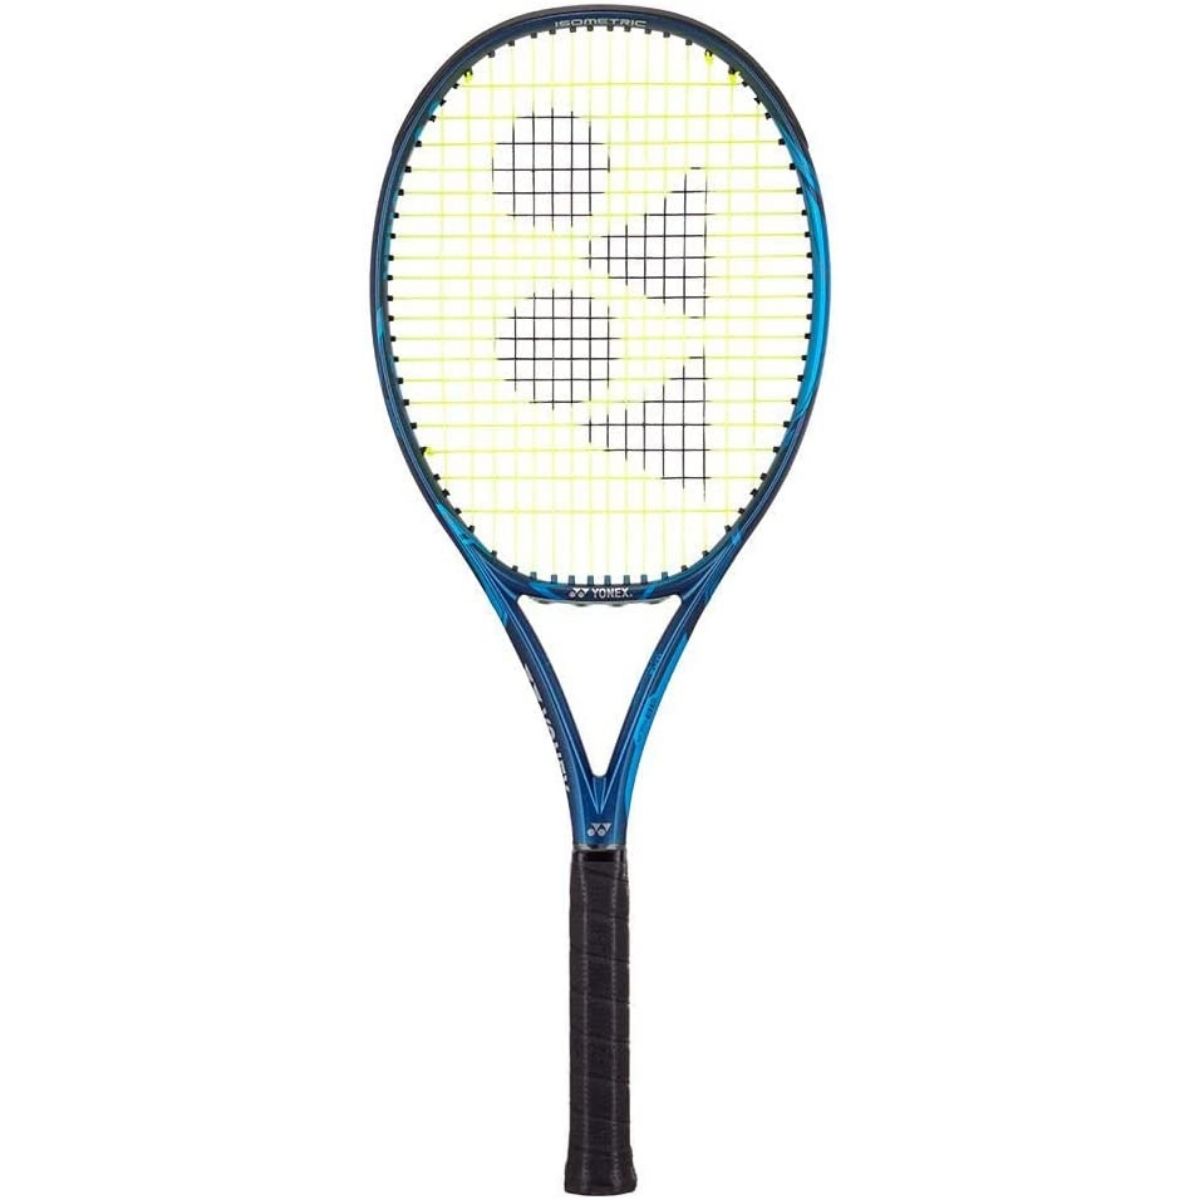 Yonex Ezone 98 Tour tennis racket review